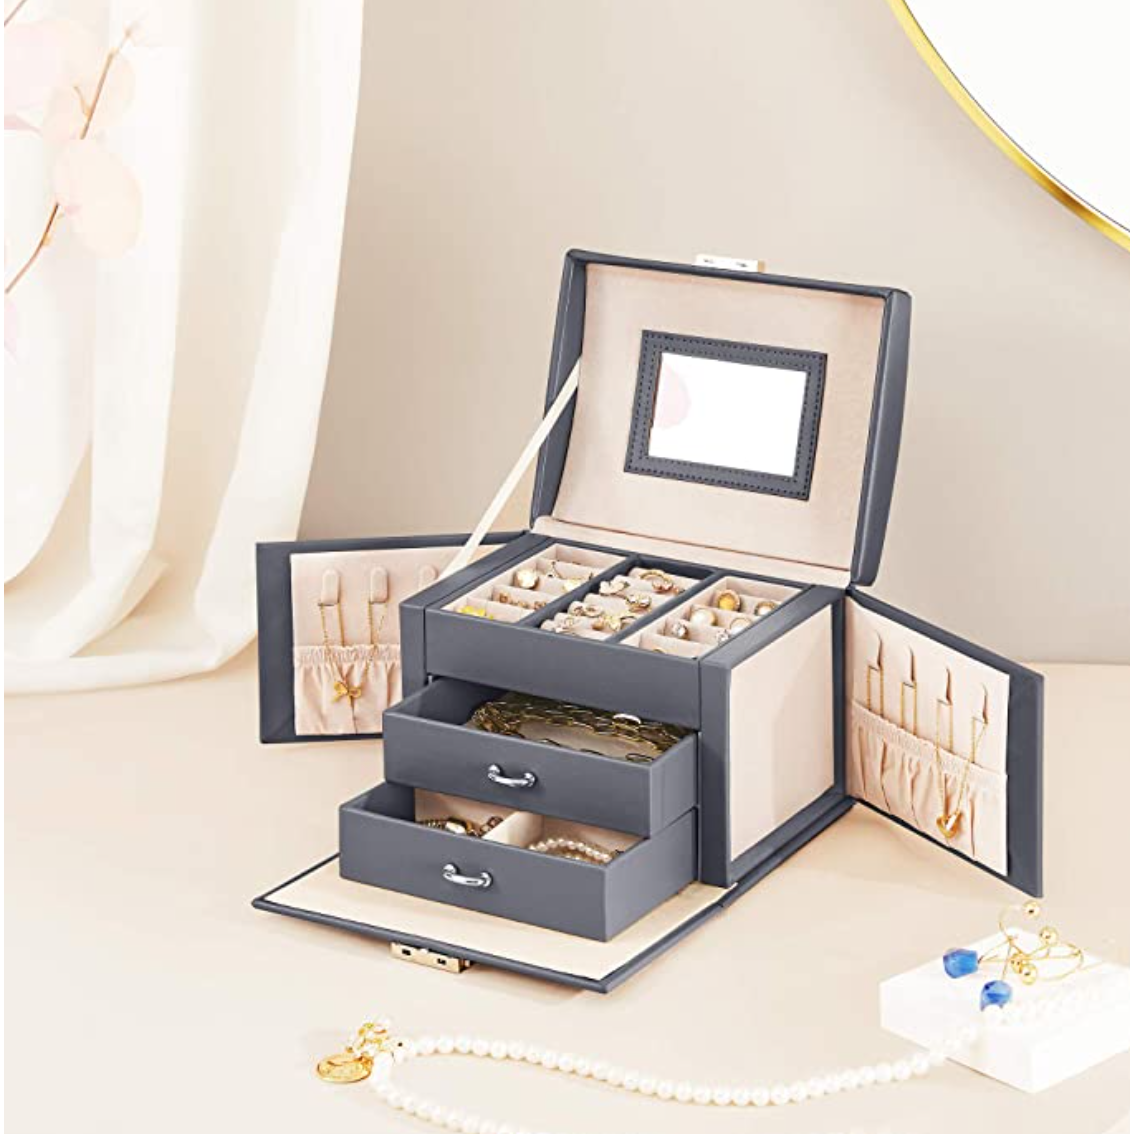 Nancy's Burnbrae Jewelry Box - Jewelry Storage - Portable - Lockable - 2 Drawers - Mirror - Key - Gray - 17.5 x 13.5 x 12 cm